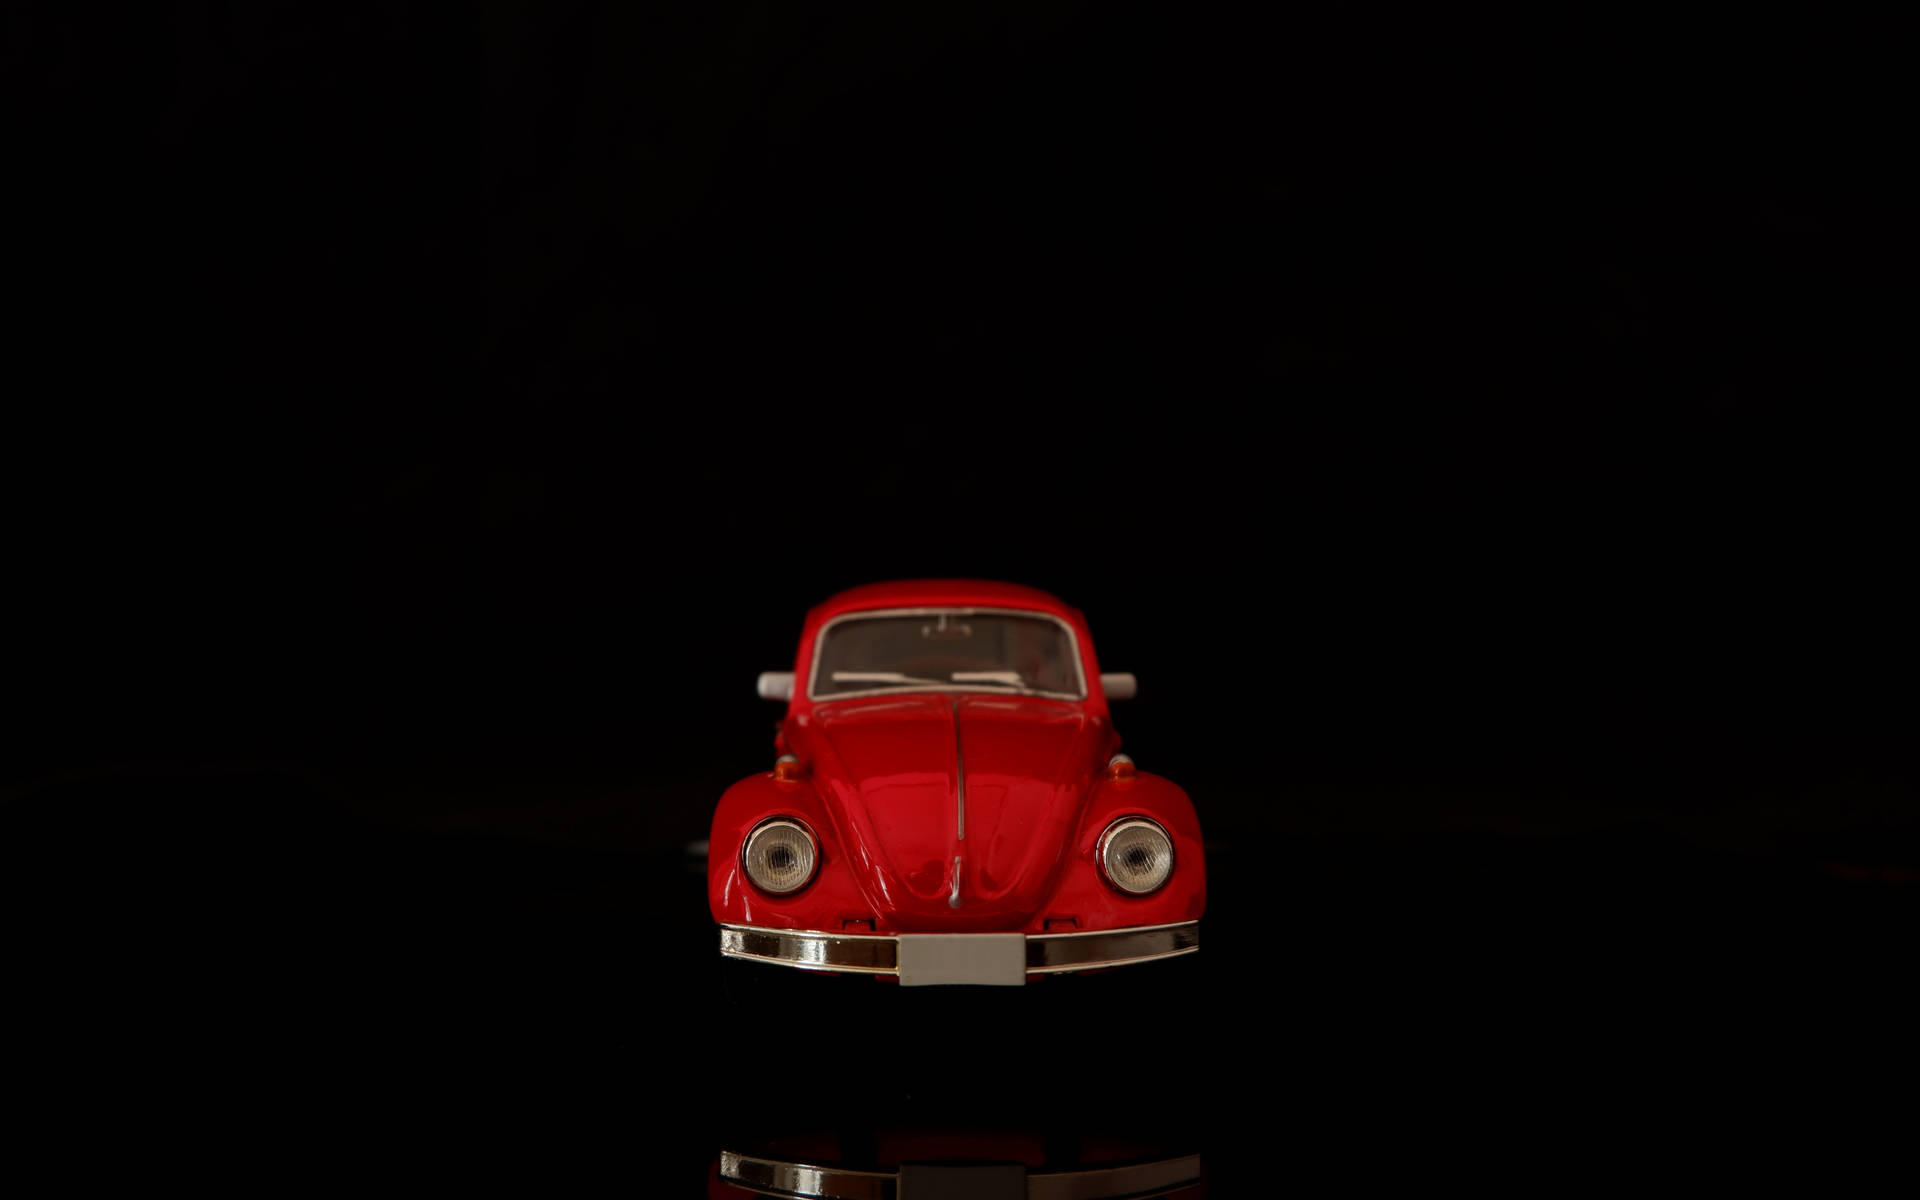 4k Vintage Red Car On Black Background